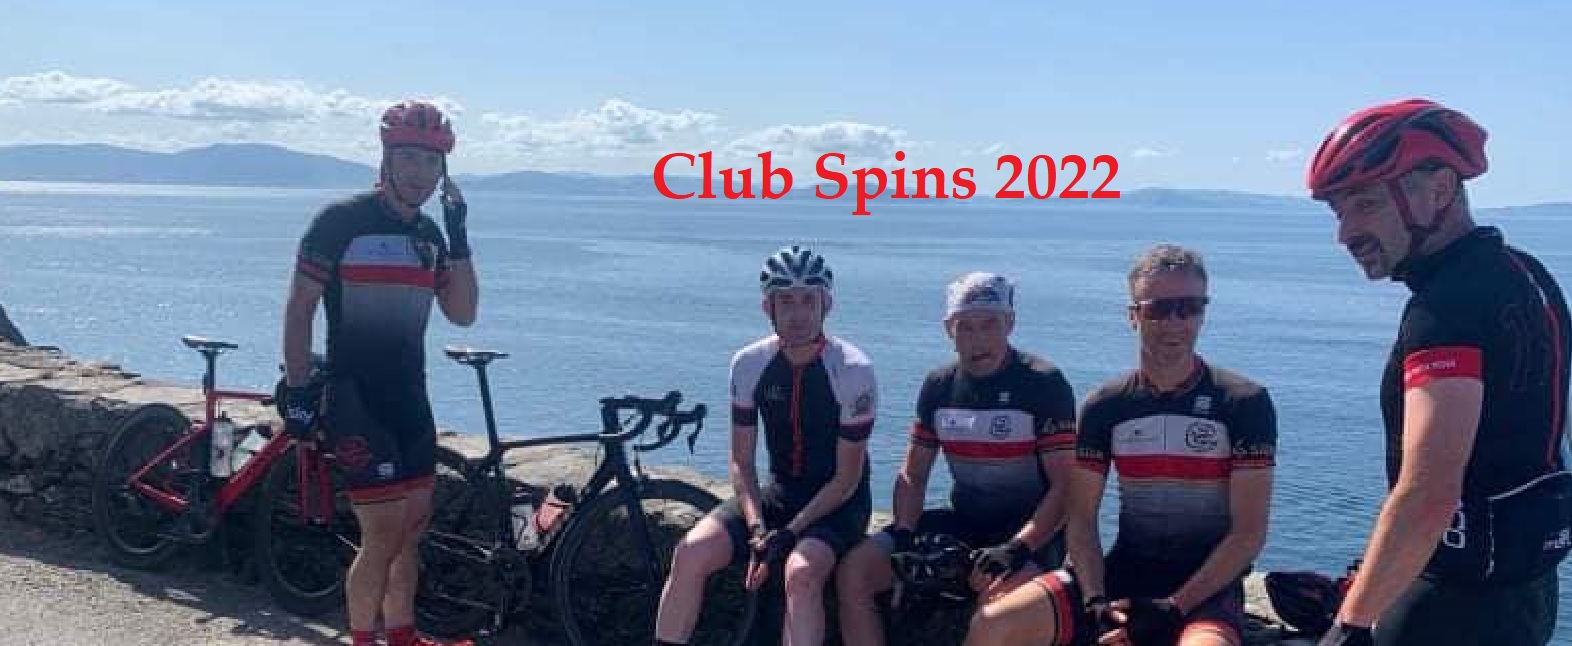 CLUB SPINS 2022 July